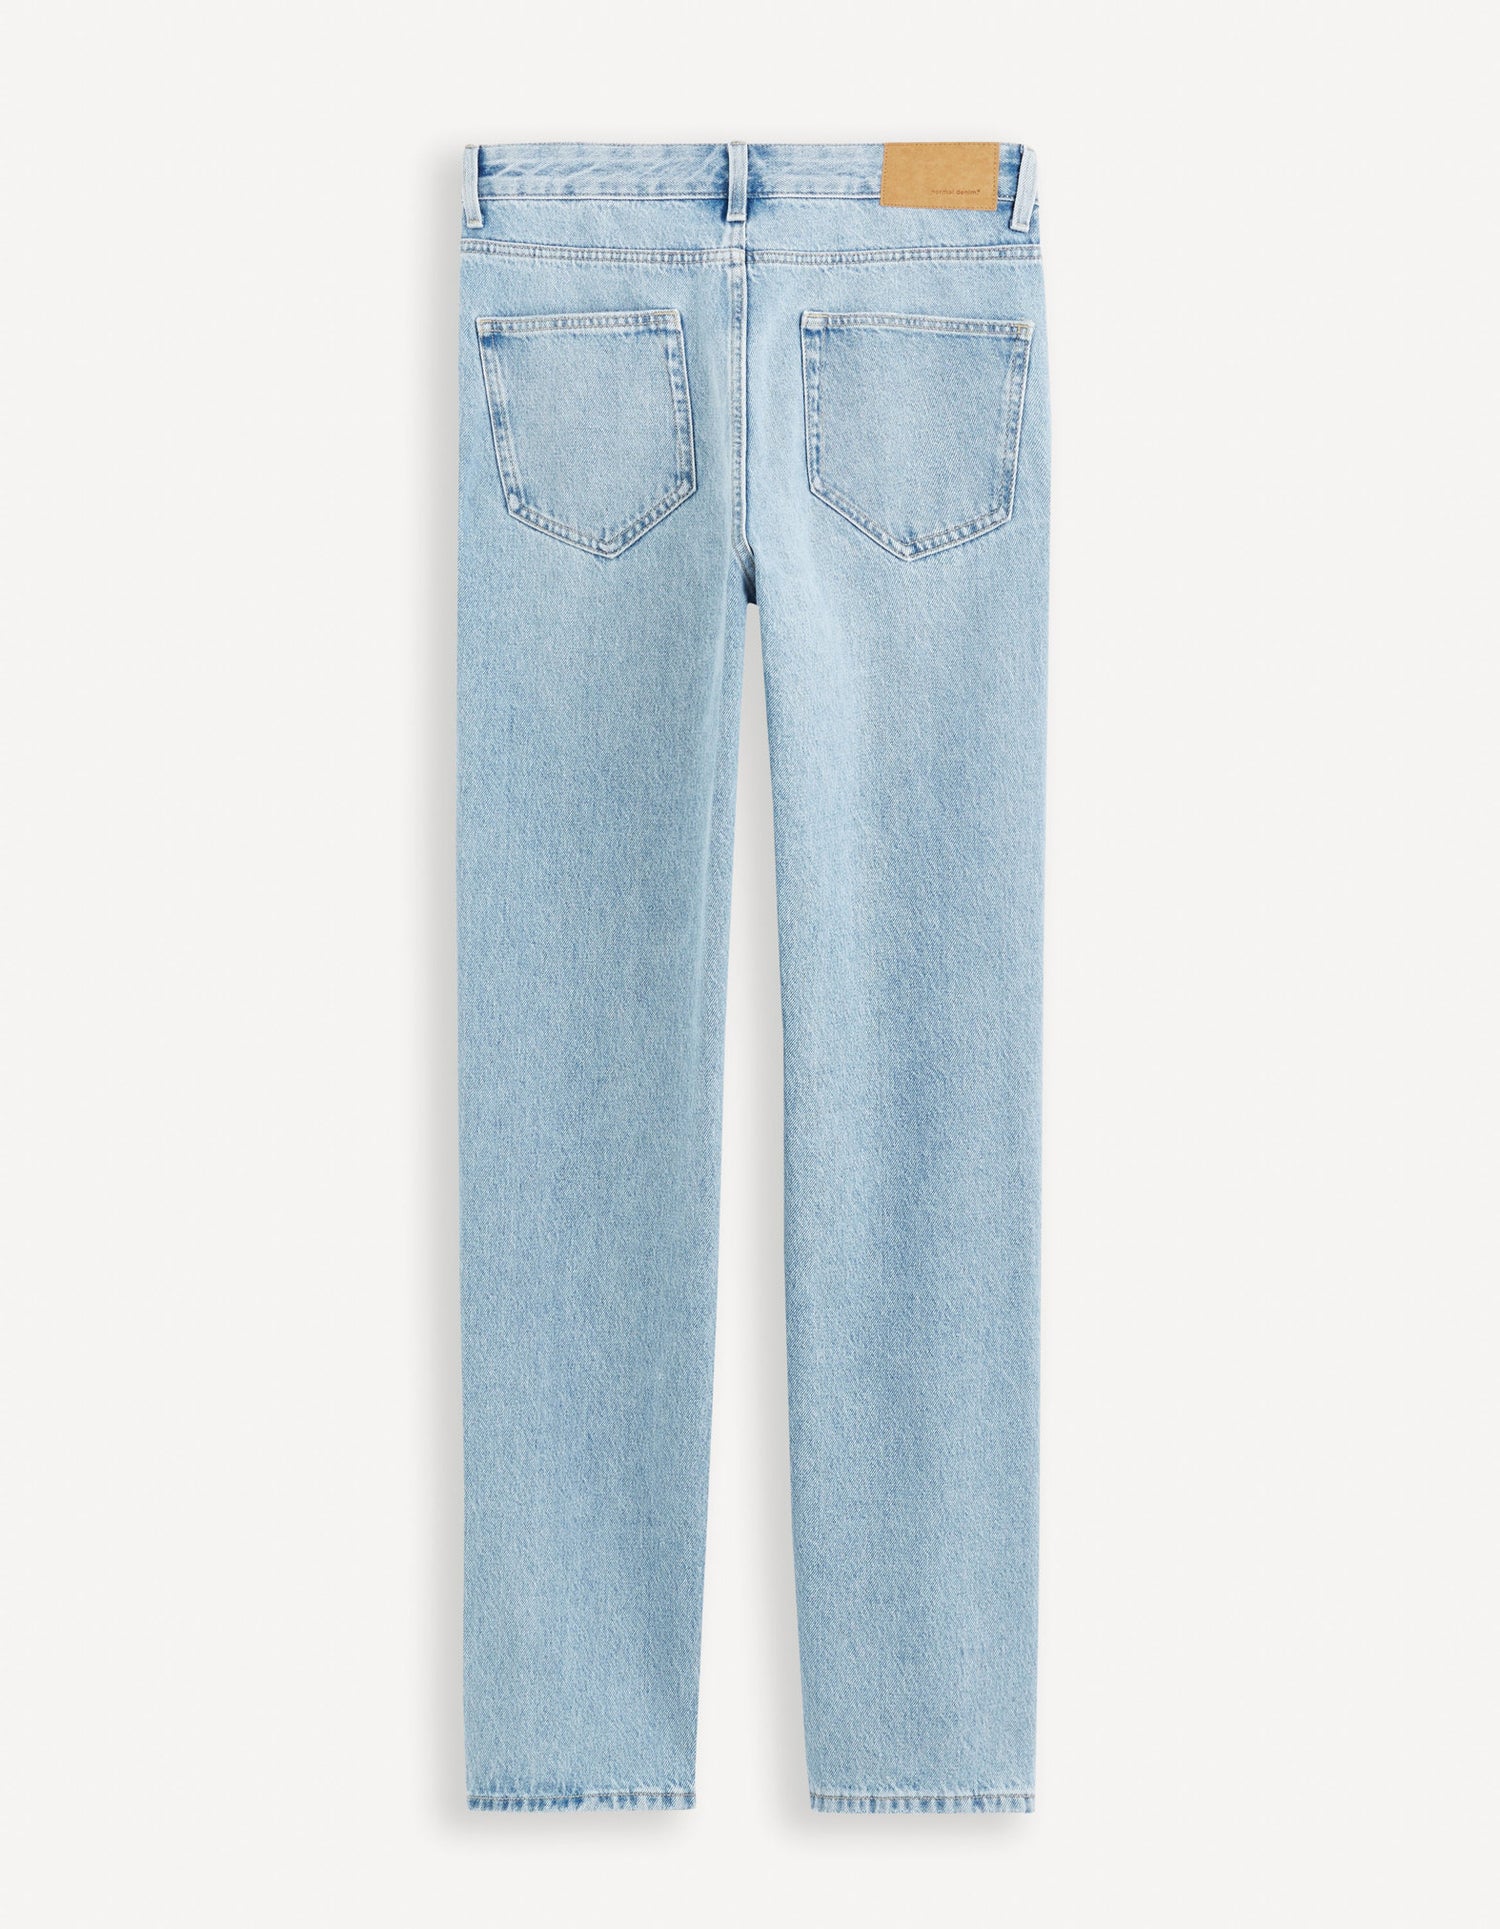 C75 Loose Jeans 100% Cotton_FOLOOSE_BLEACHED_06